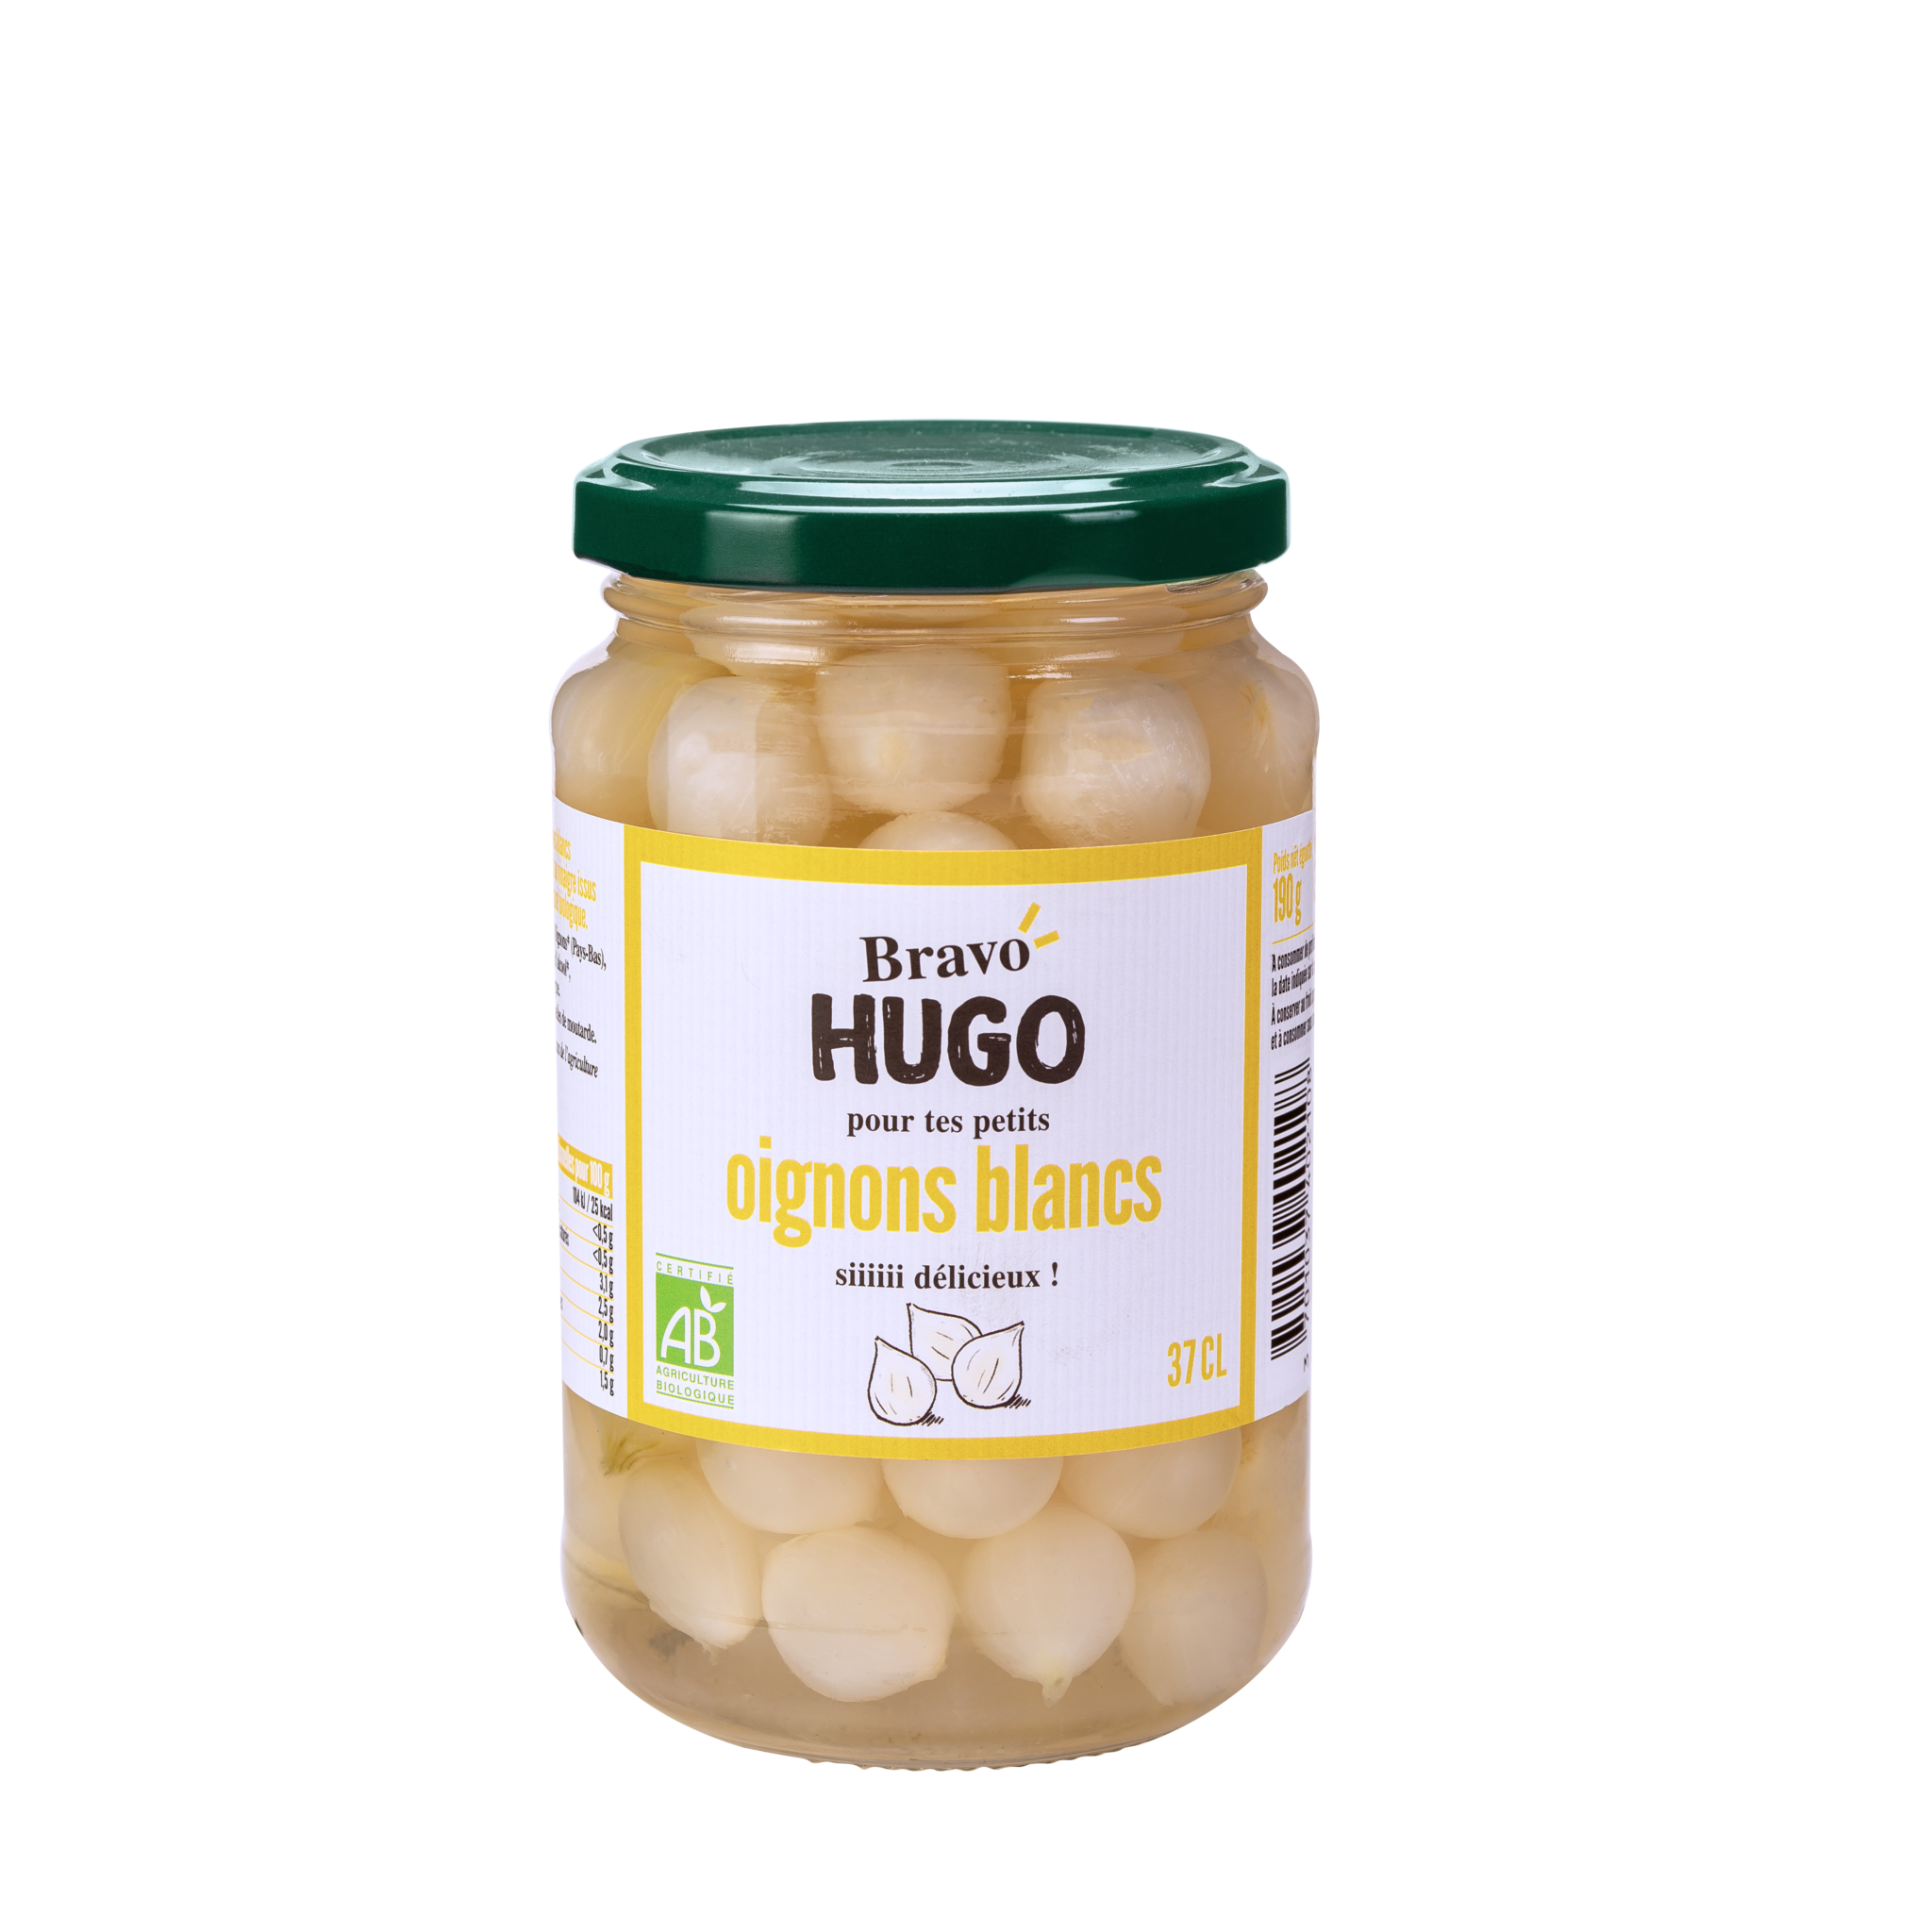 Bravo hugo Oignon Blancs 37cl HD 2048x2048 1 - Des nouveaux pickles bio et gourmands chez Bravo Hugo